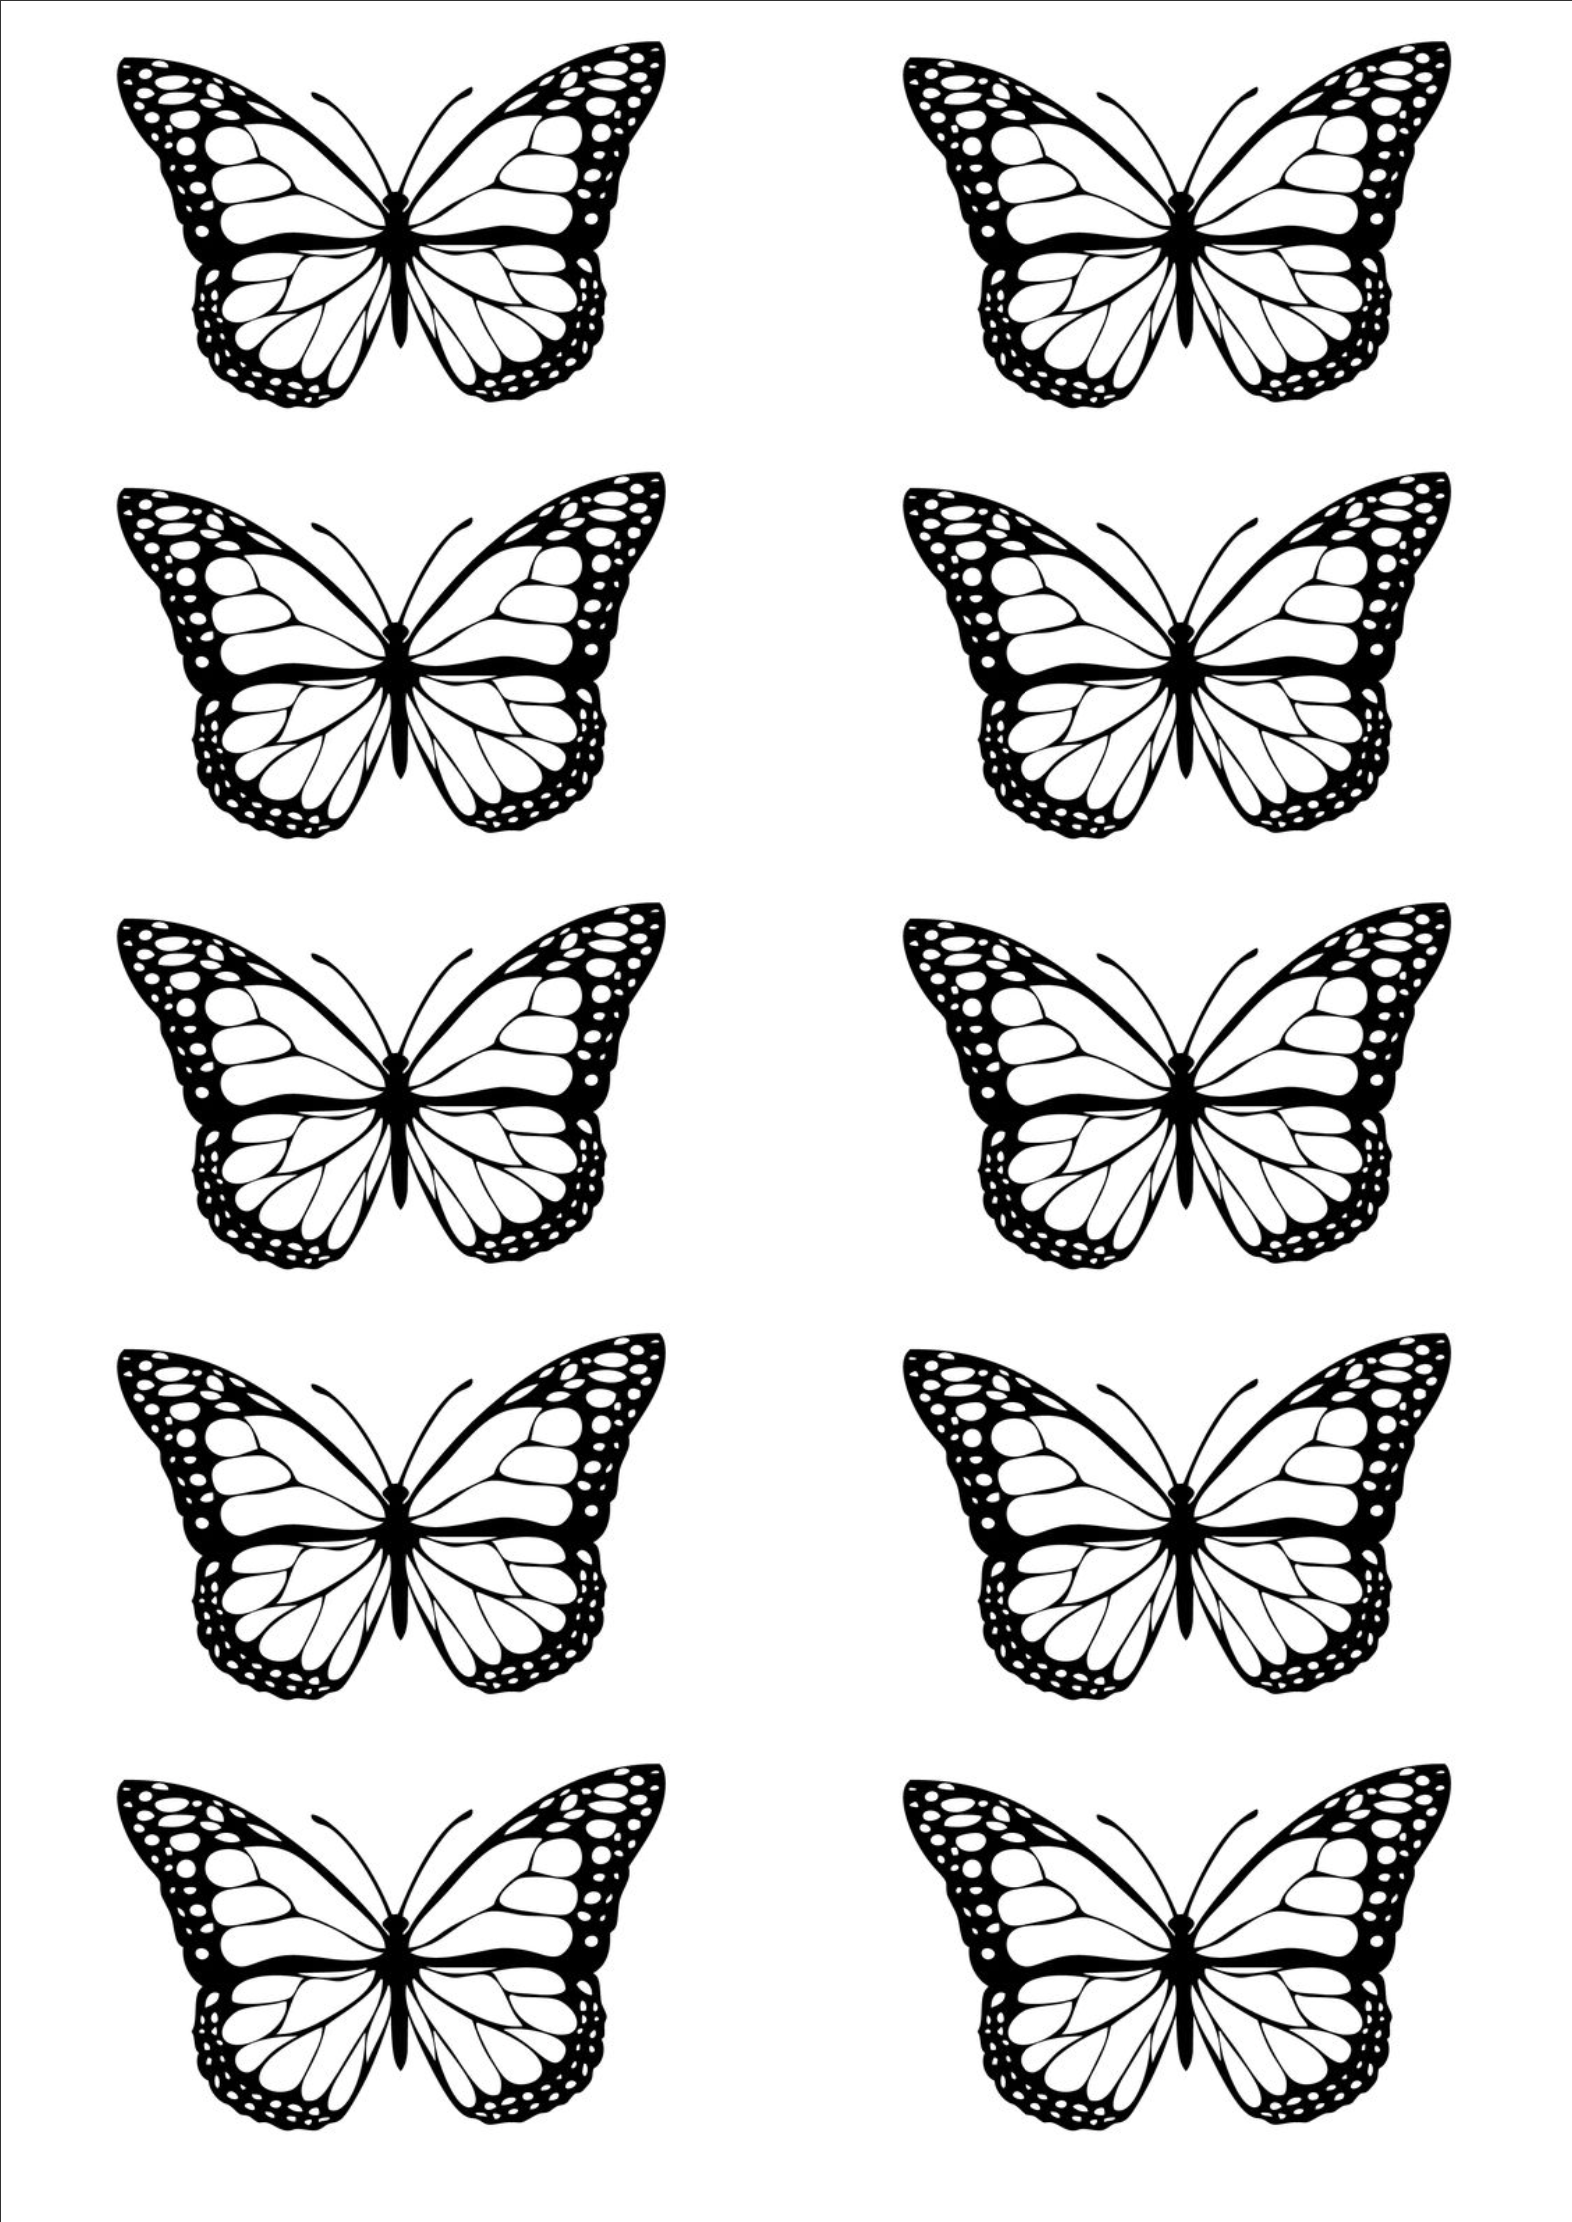 Распечатки бабочек черно. Трафареты бабочек для декора. Шаблоны бабочек для украшения стен. Бабочки для распечатки. Трафарет бабочки на стену.